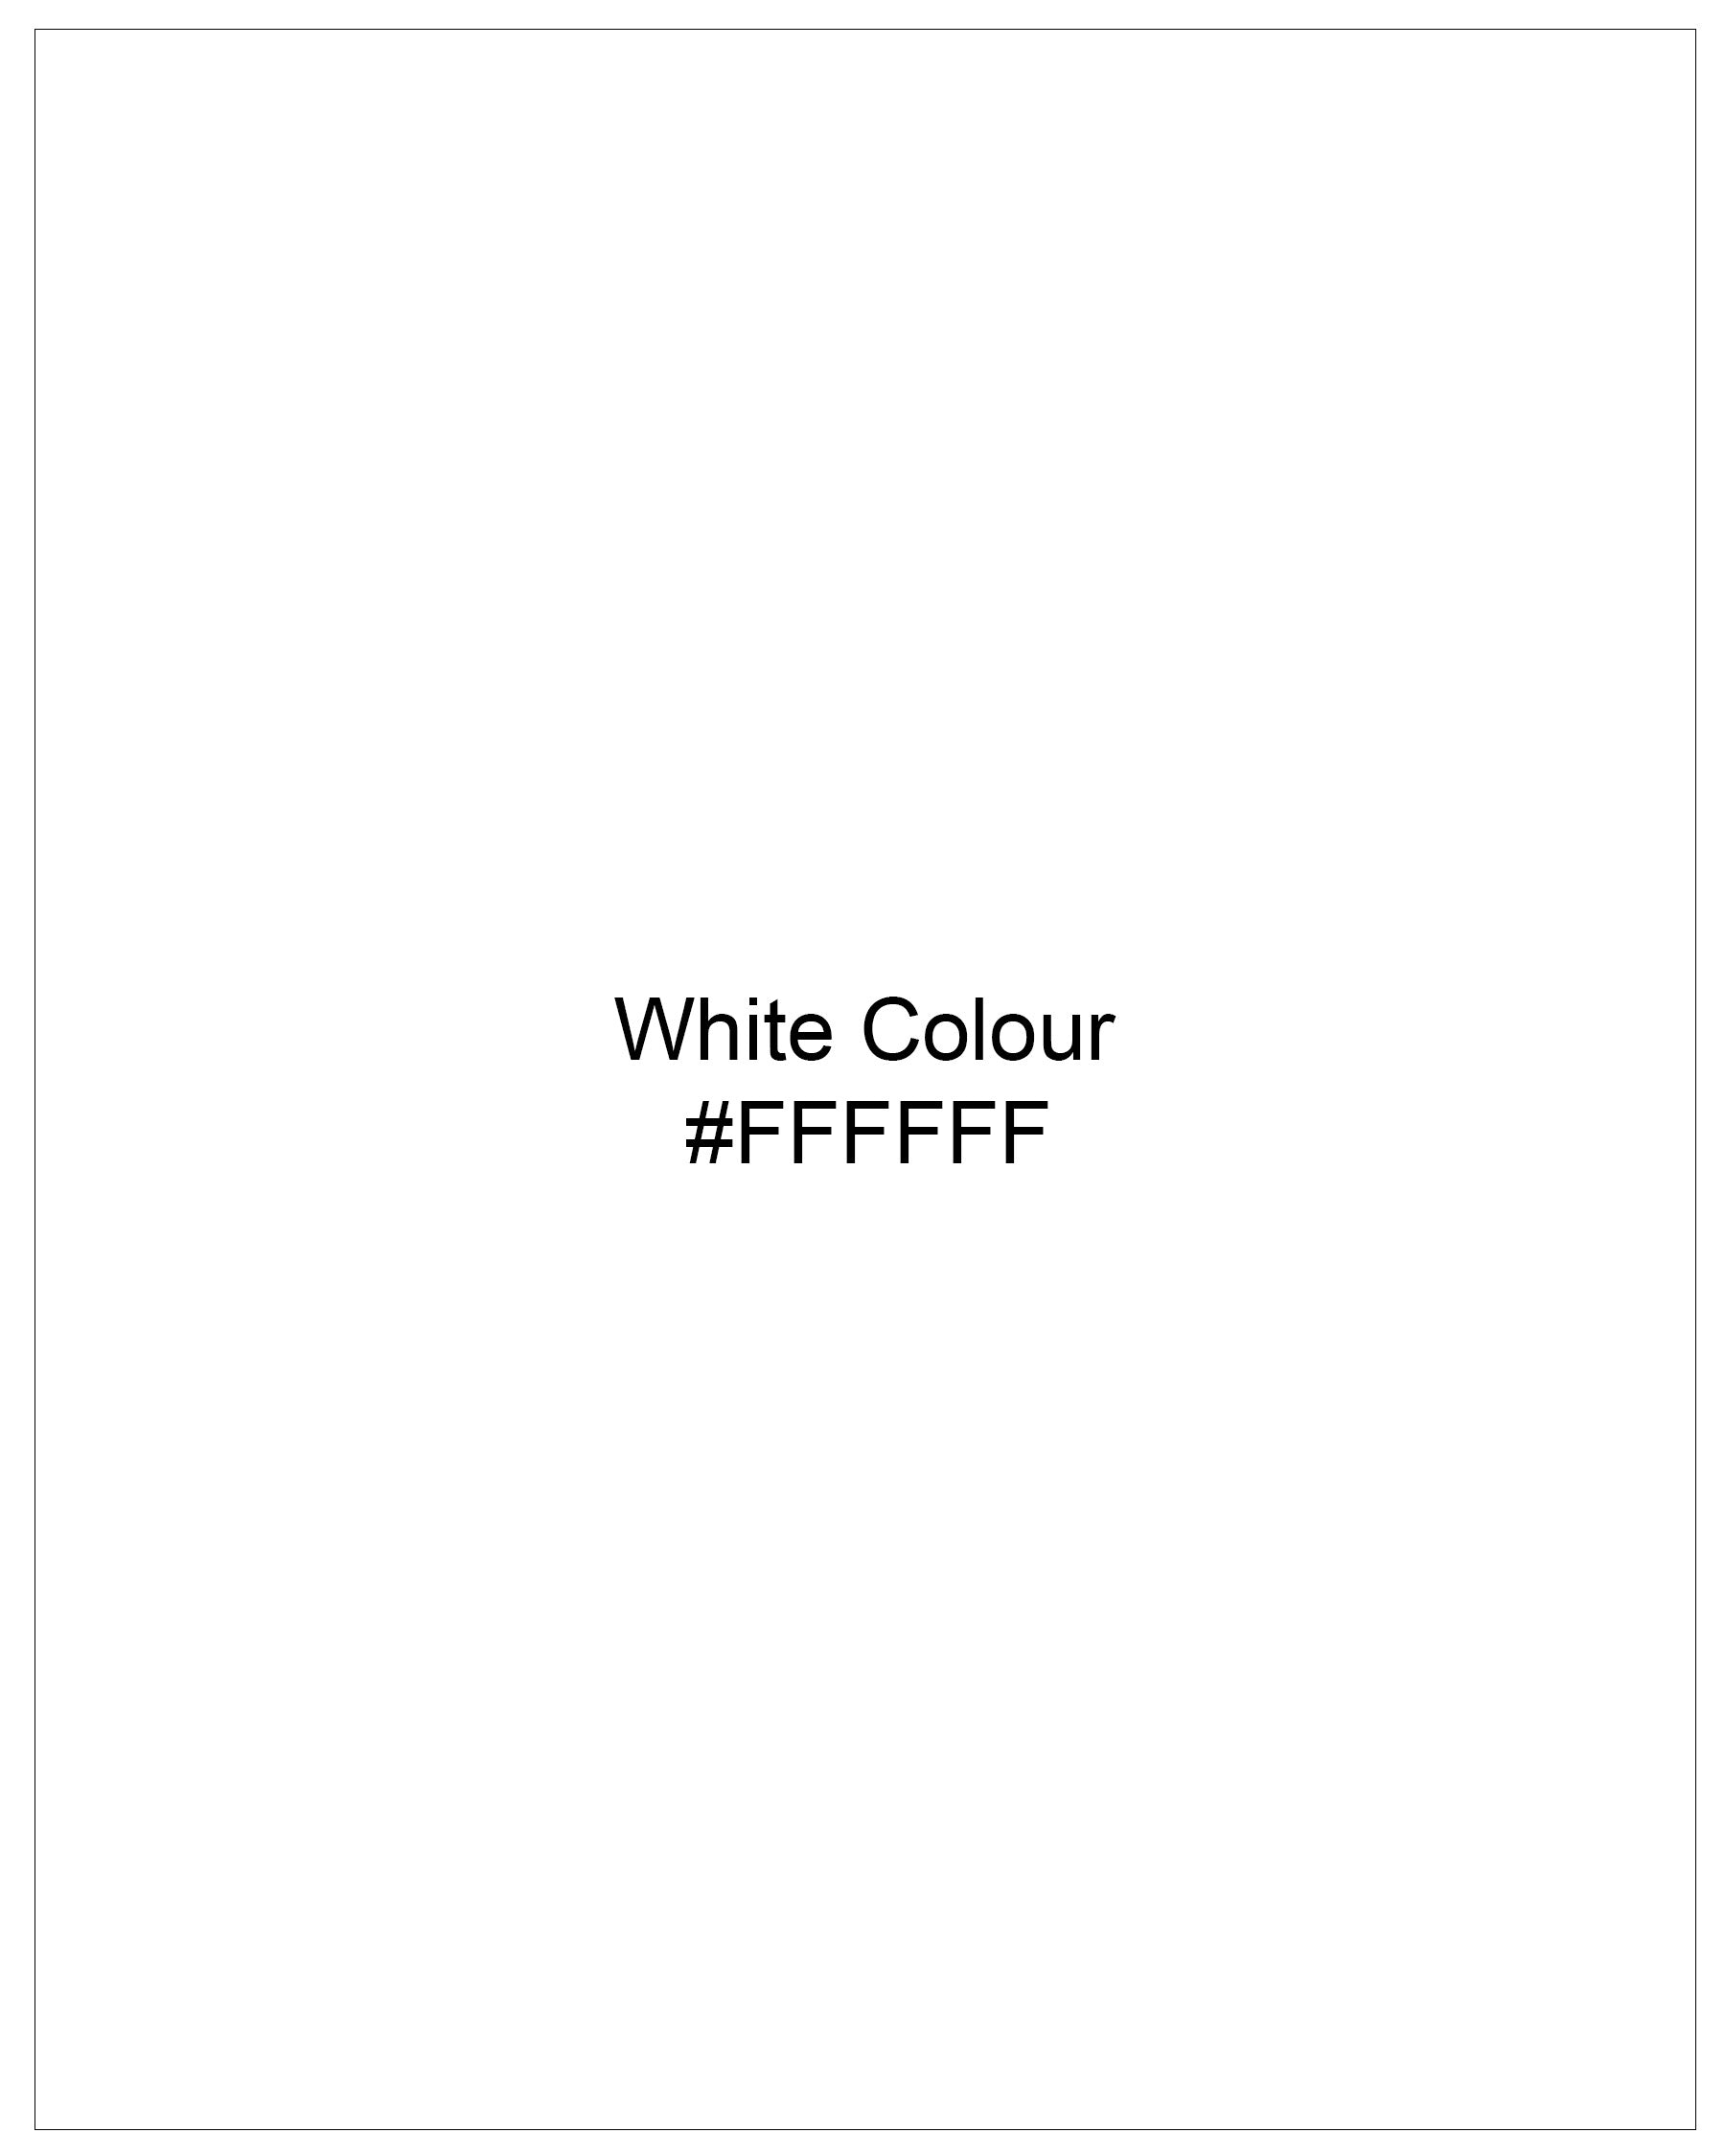 Bright White Dobby Textured Premium Giza Cotton Shirt 7868-BLK-38, 7868-BLK-H-38, 7868-BLK-39, 7868-BLK-H-39, 7868-BLK-40, 7868-BLK-H-40, 7868-BLK-42, 7868-BLK-H-42, 7868-BLK-44, 7868-BLK-H-44, 7868-BLK-46, 7868-BLK-H-46, 7868-BLK-48, 7868-BLK-H-48, 7868-BLK-50, 7868-BLK-H-50, 7868-BLK-52, 7868-BLK-H-52